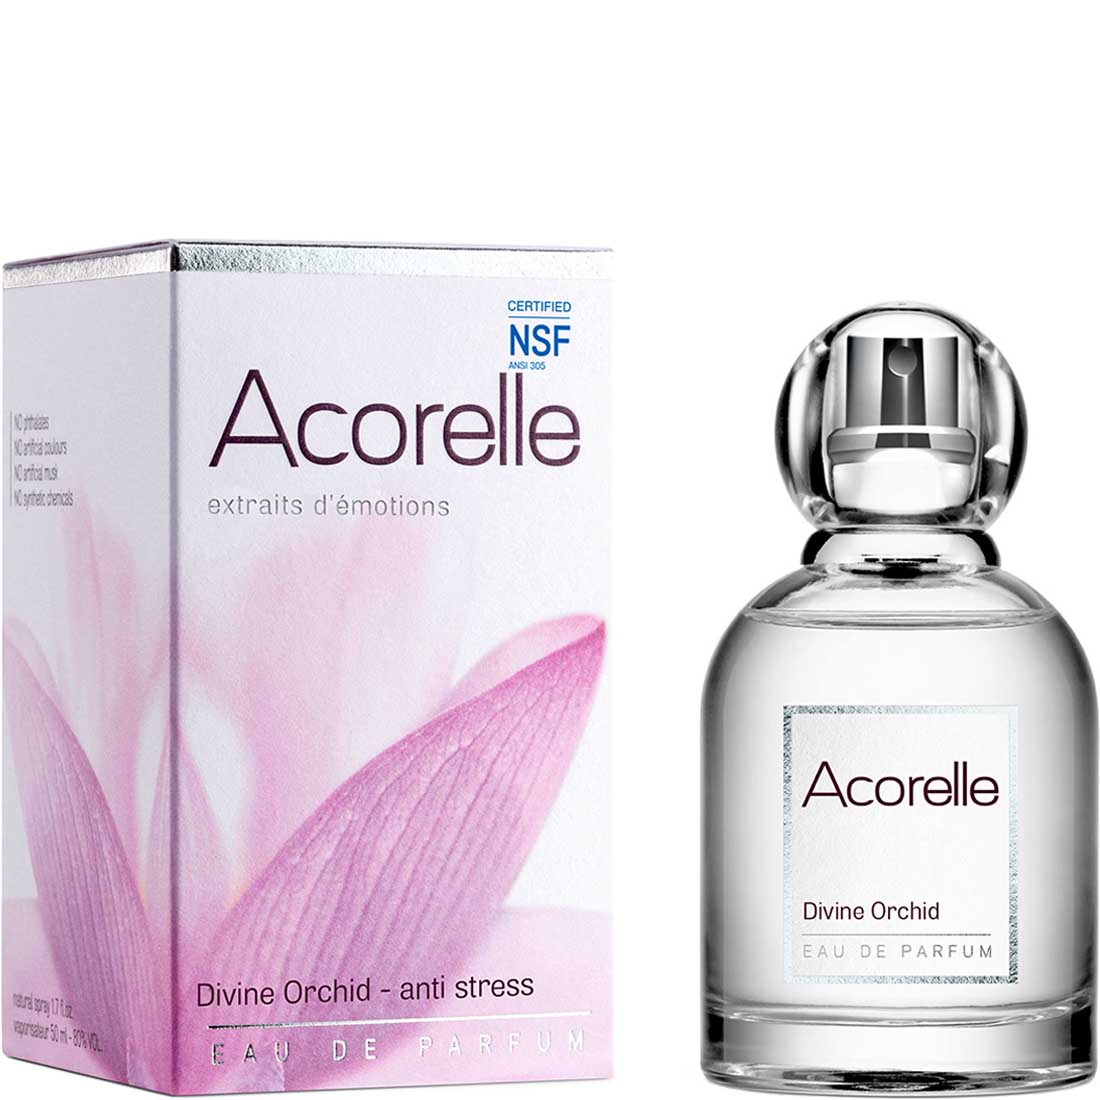 Acorelle Eau De Parfum, 50ml